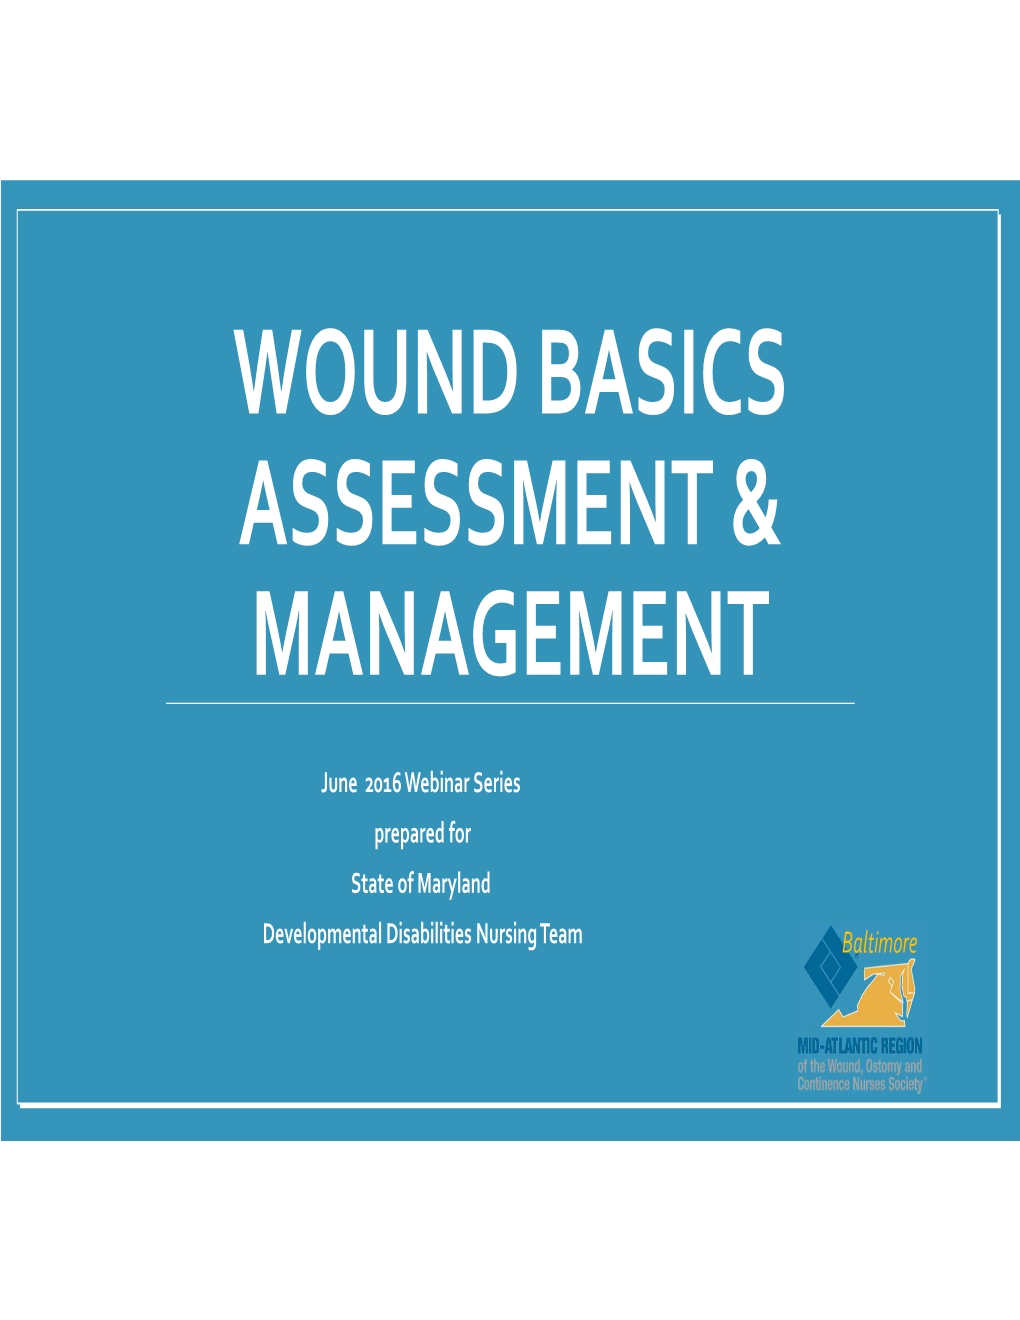 Wound Basics Assessment & Management